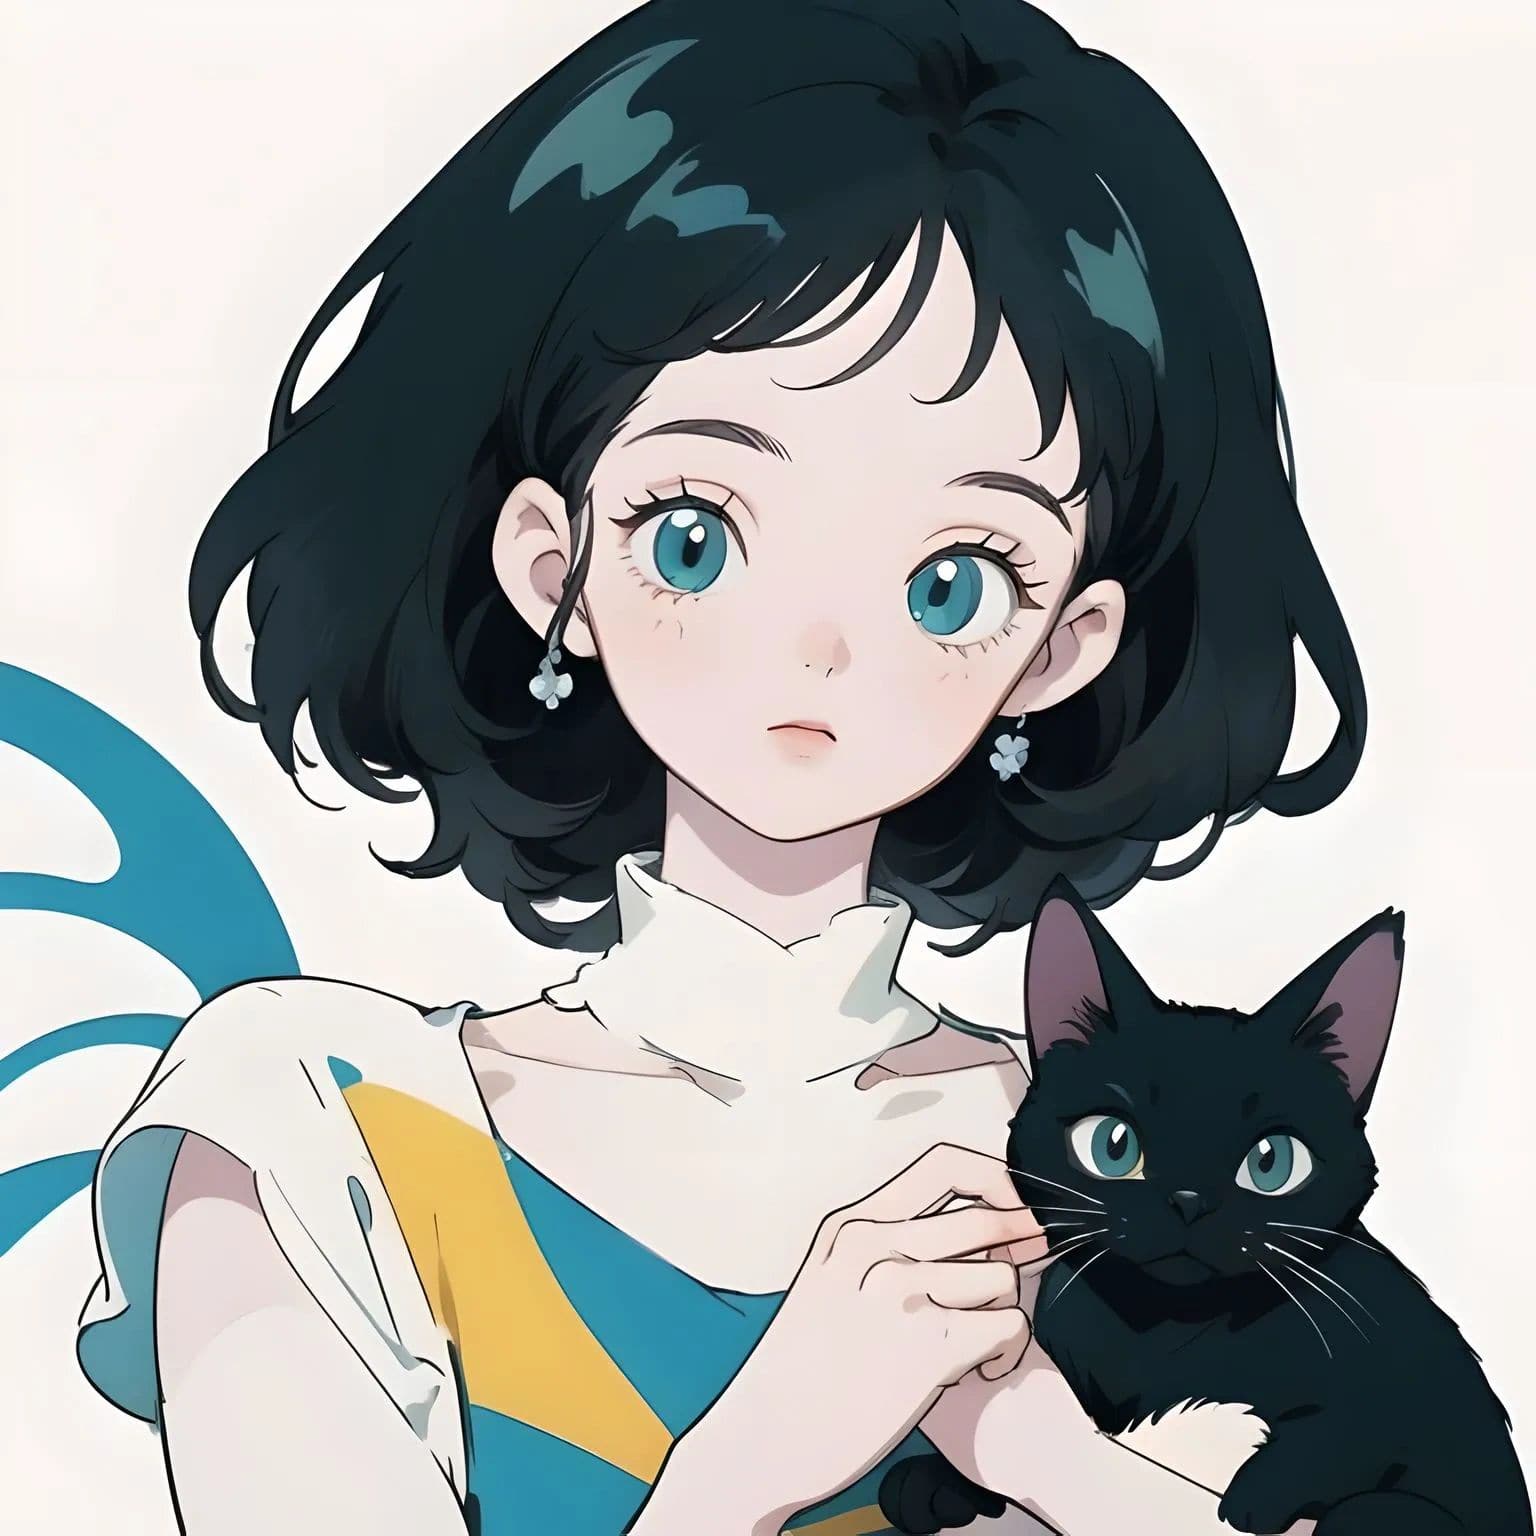 少女抱着猫的动漫头像-图库-五毛网